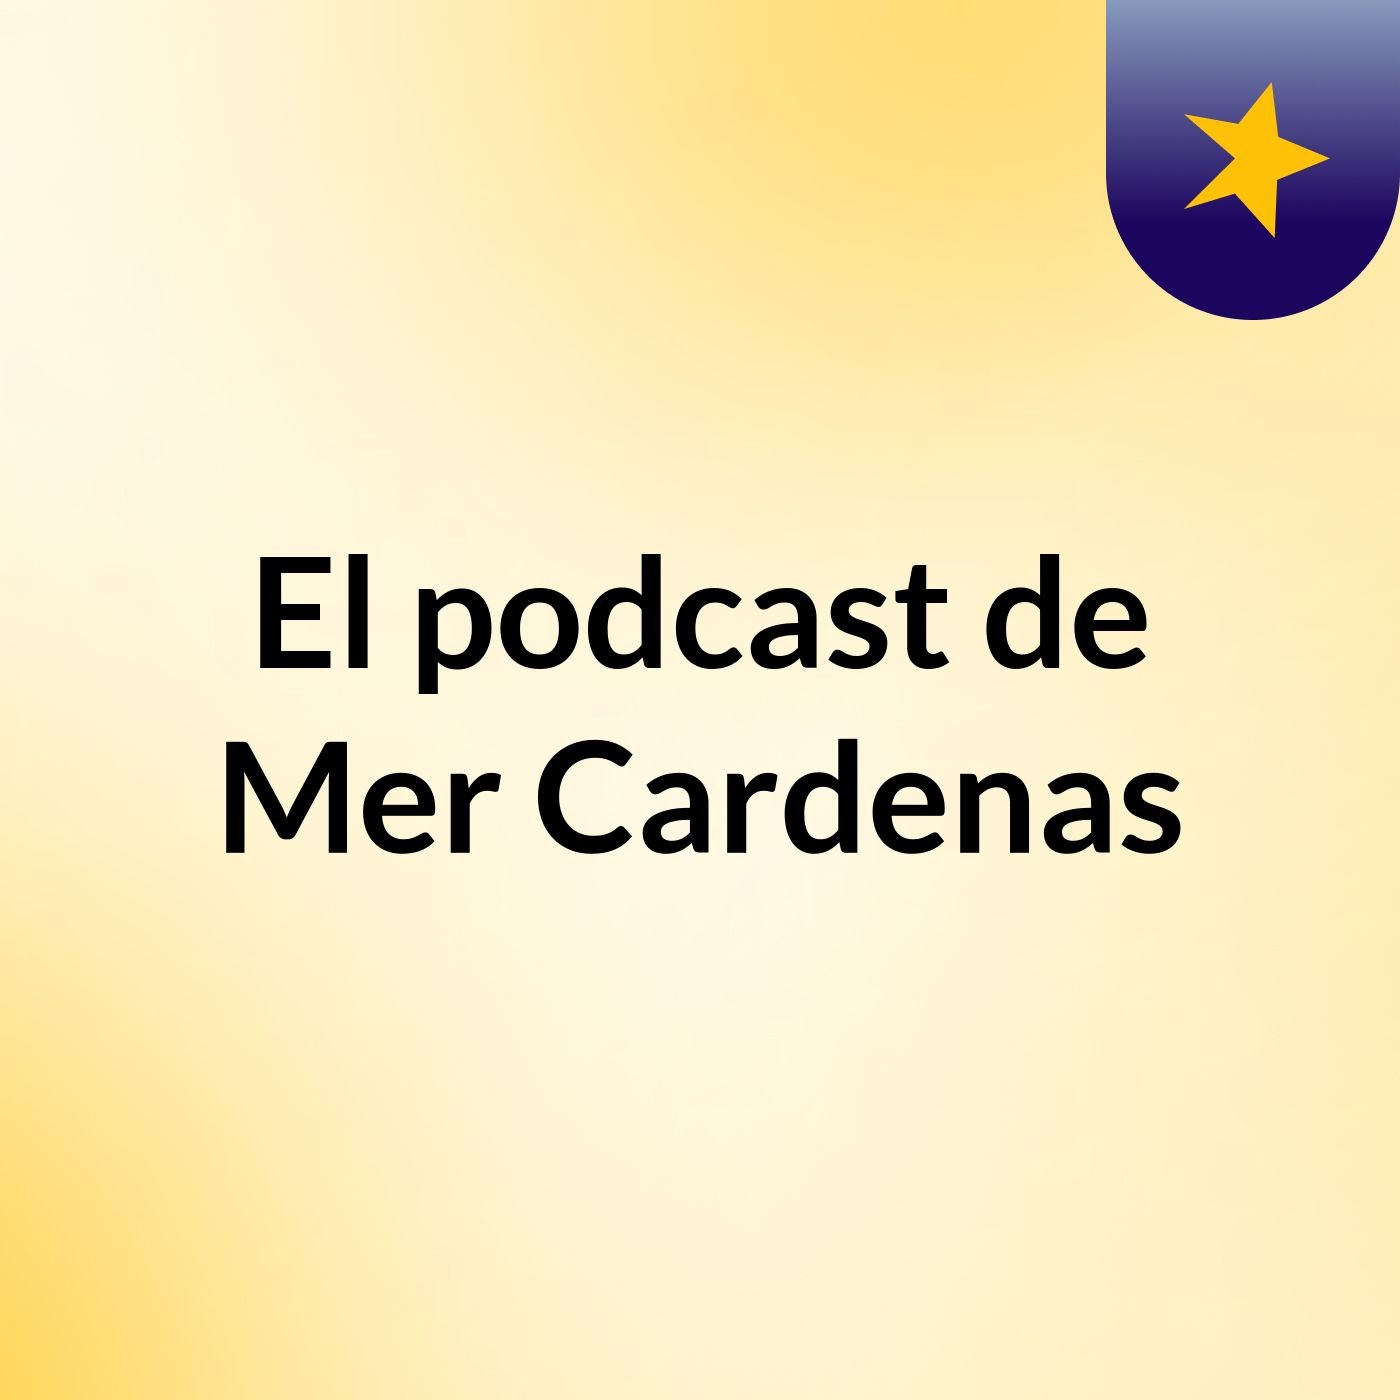 El podcast de Mer Cardenas